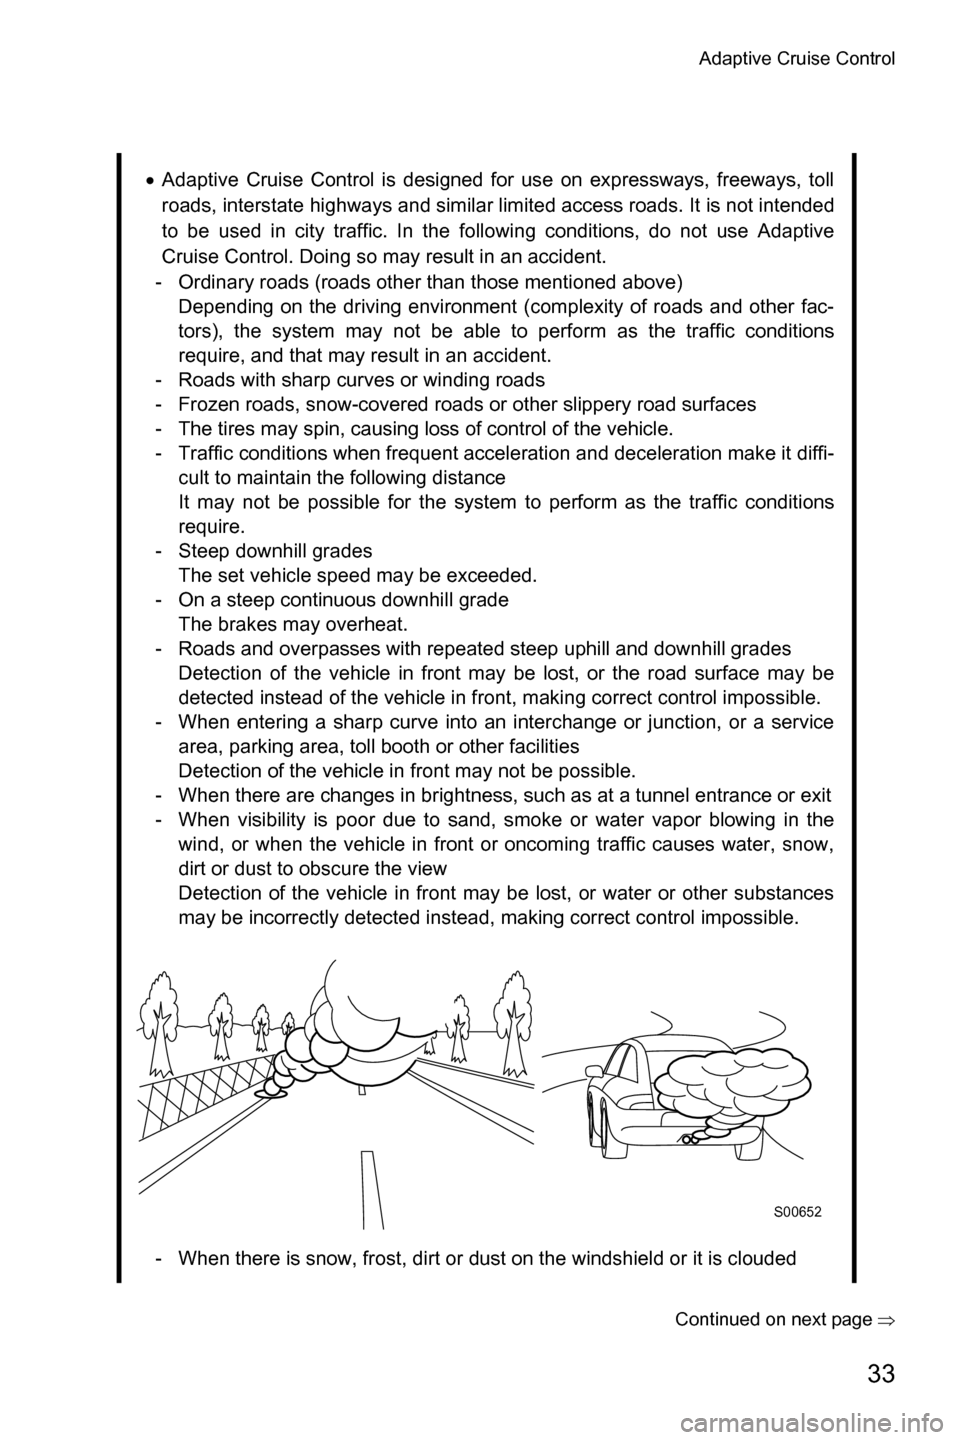 SUBARU LEGACY 2016 6.G Driving Assist Manual Adaptive Cruise Control
33
�Continued on next page��Ÿ
�xAdaptive Cruise Control is designed for use on expressways, freeways, toll
roads, interstate highways and similar limited access roads. It is